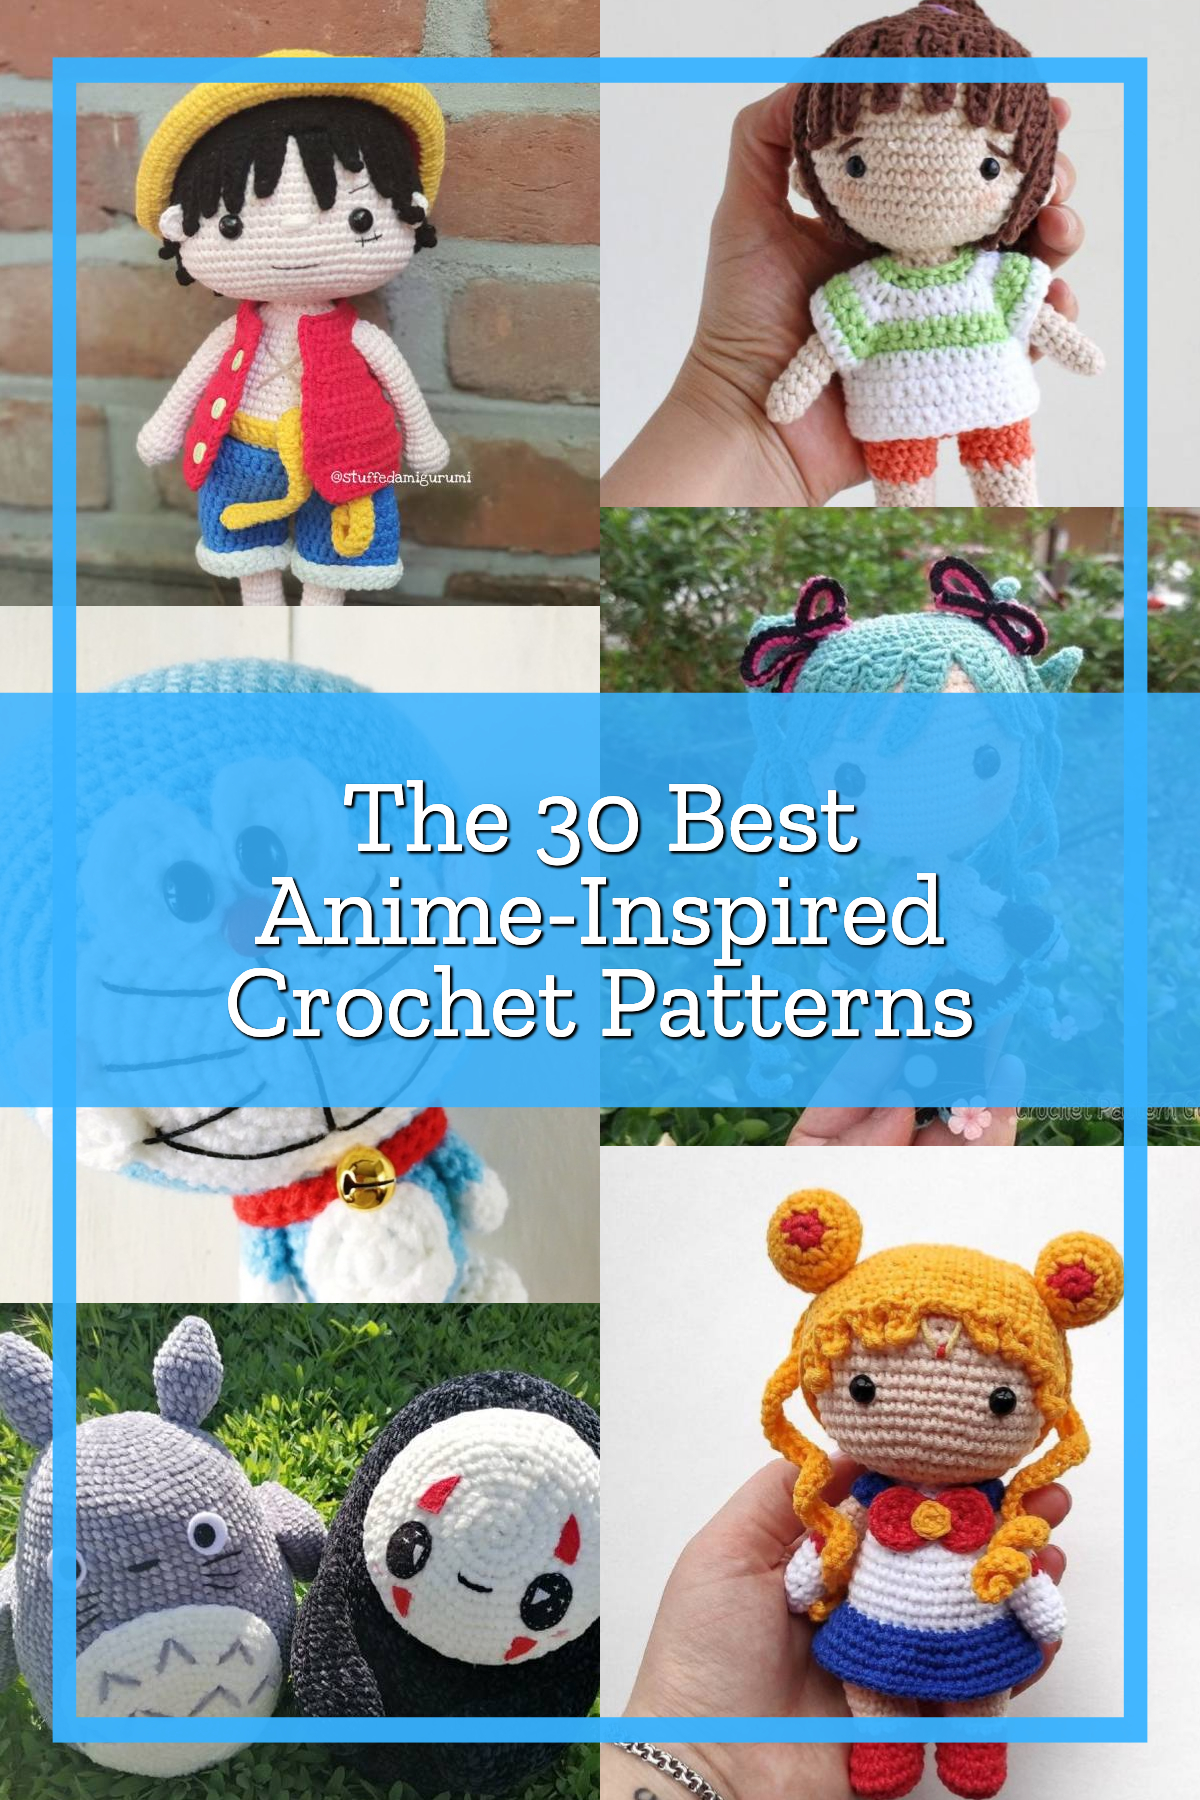 The 30 Best Anime-Inspired Crochet Patterns